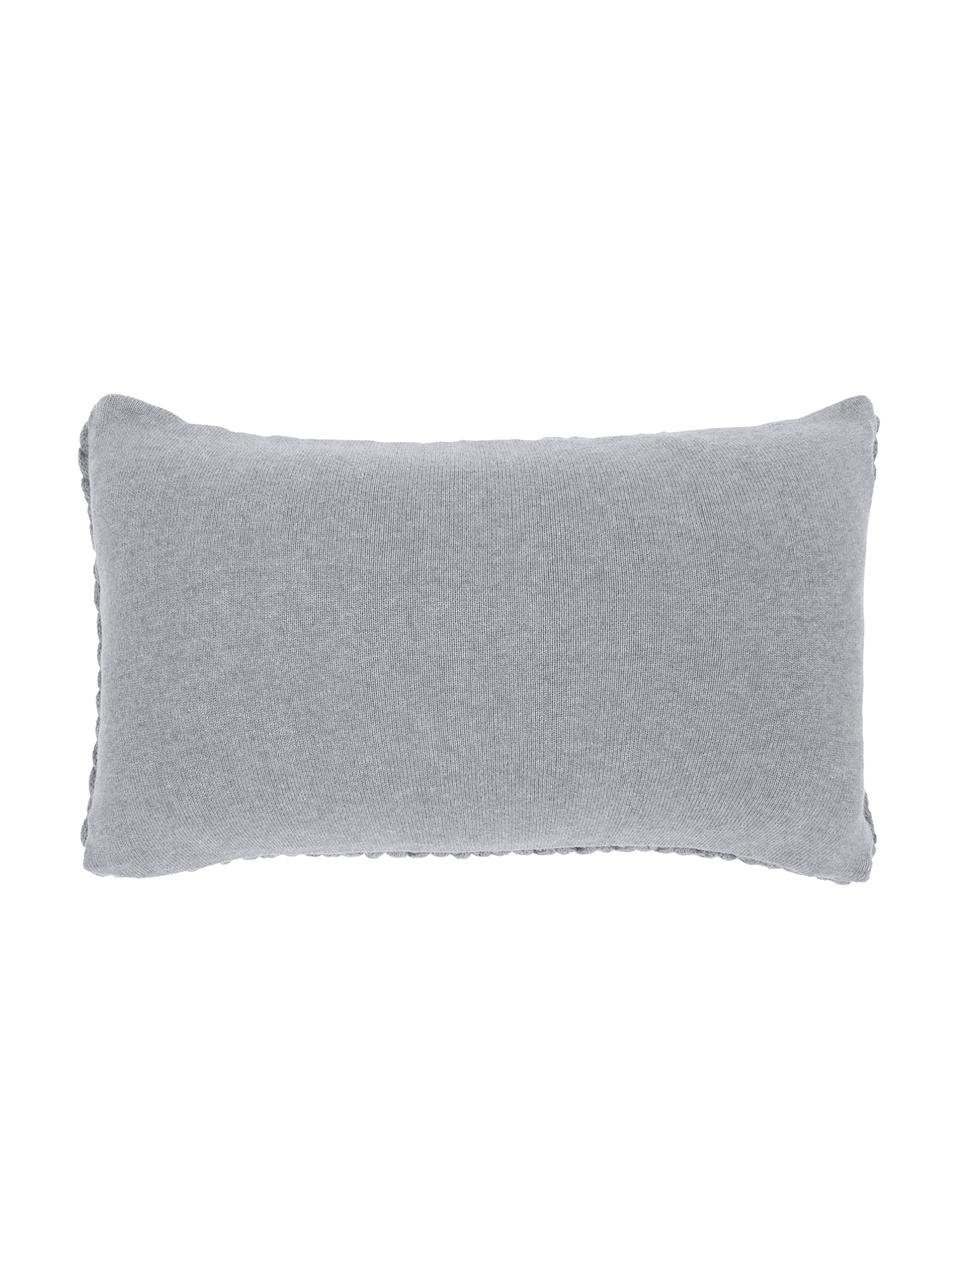 Poszewka na poduszkę Josie, 100% bawełna, Jasny szary, S 40 x D 60 cm